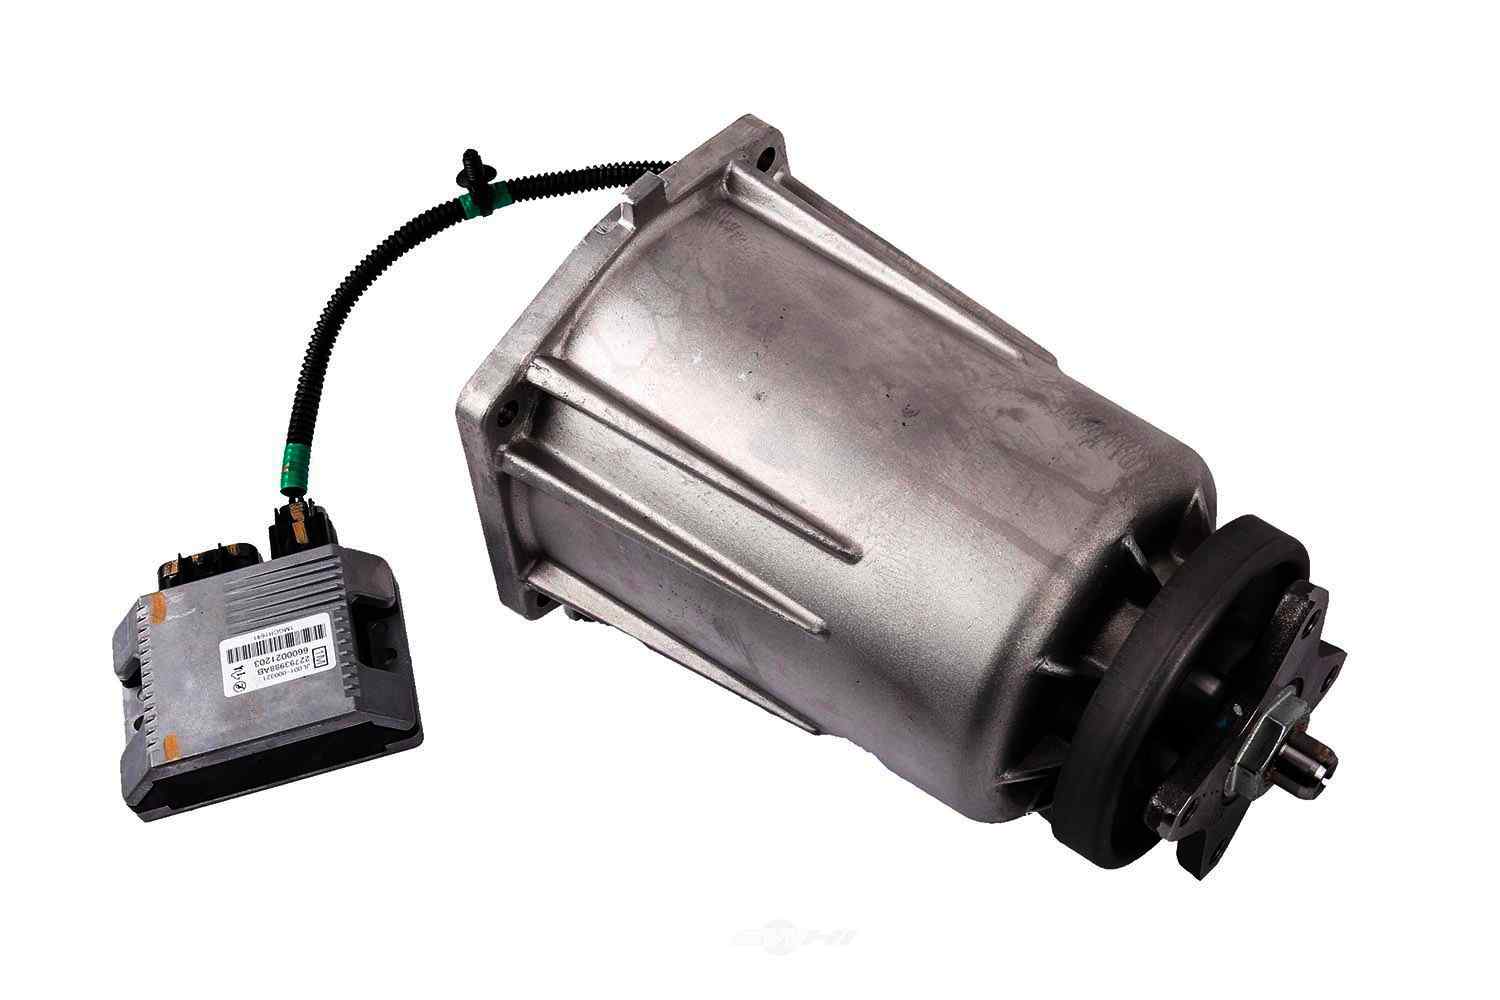 GM GENUINE PARTS - Differential Clutch Pump Actuator - GMP 84165522